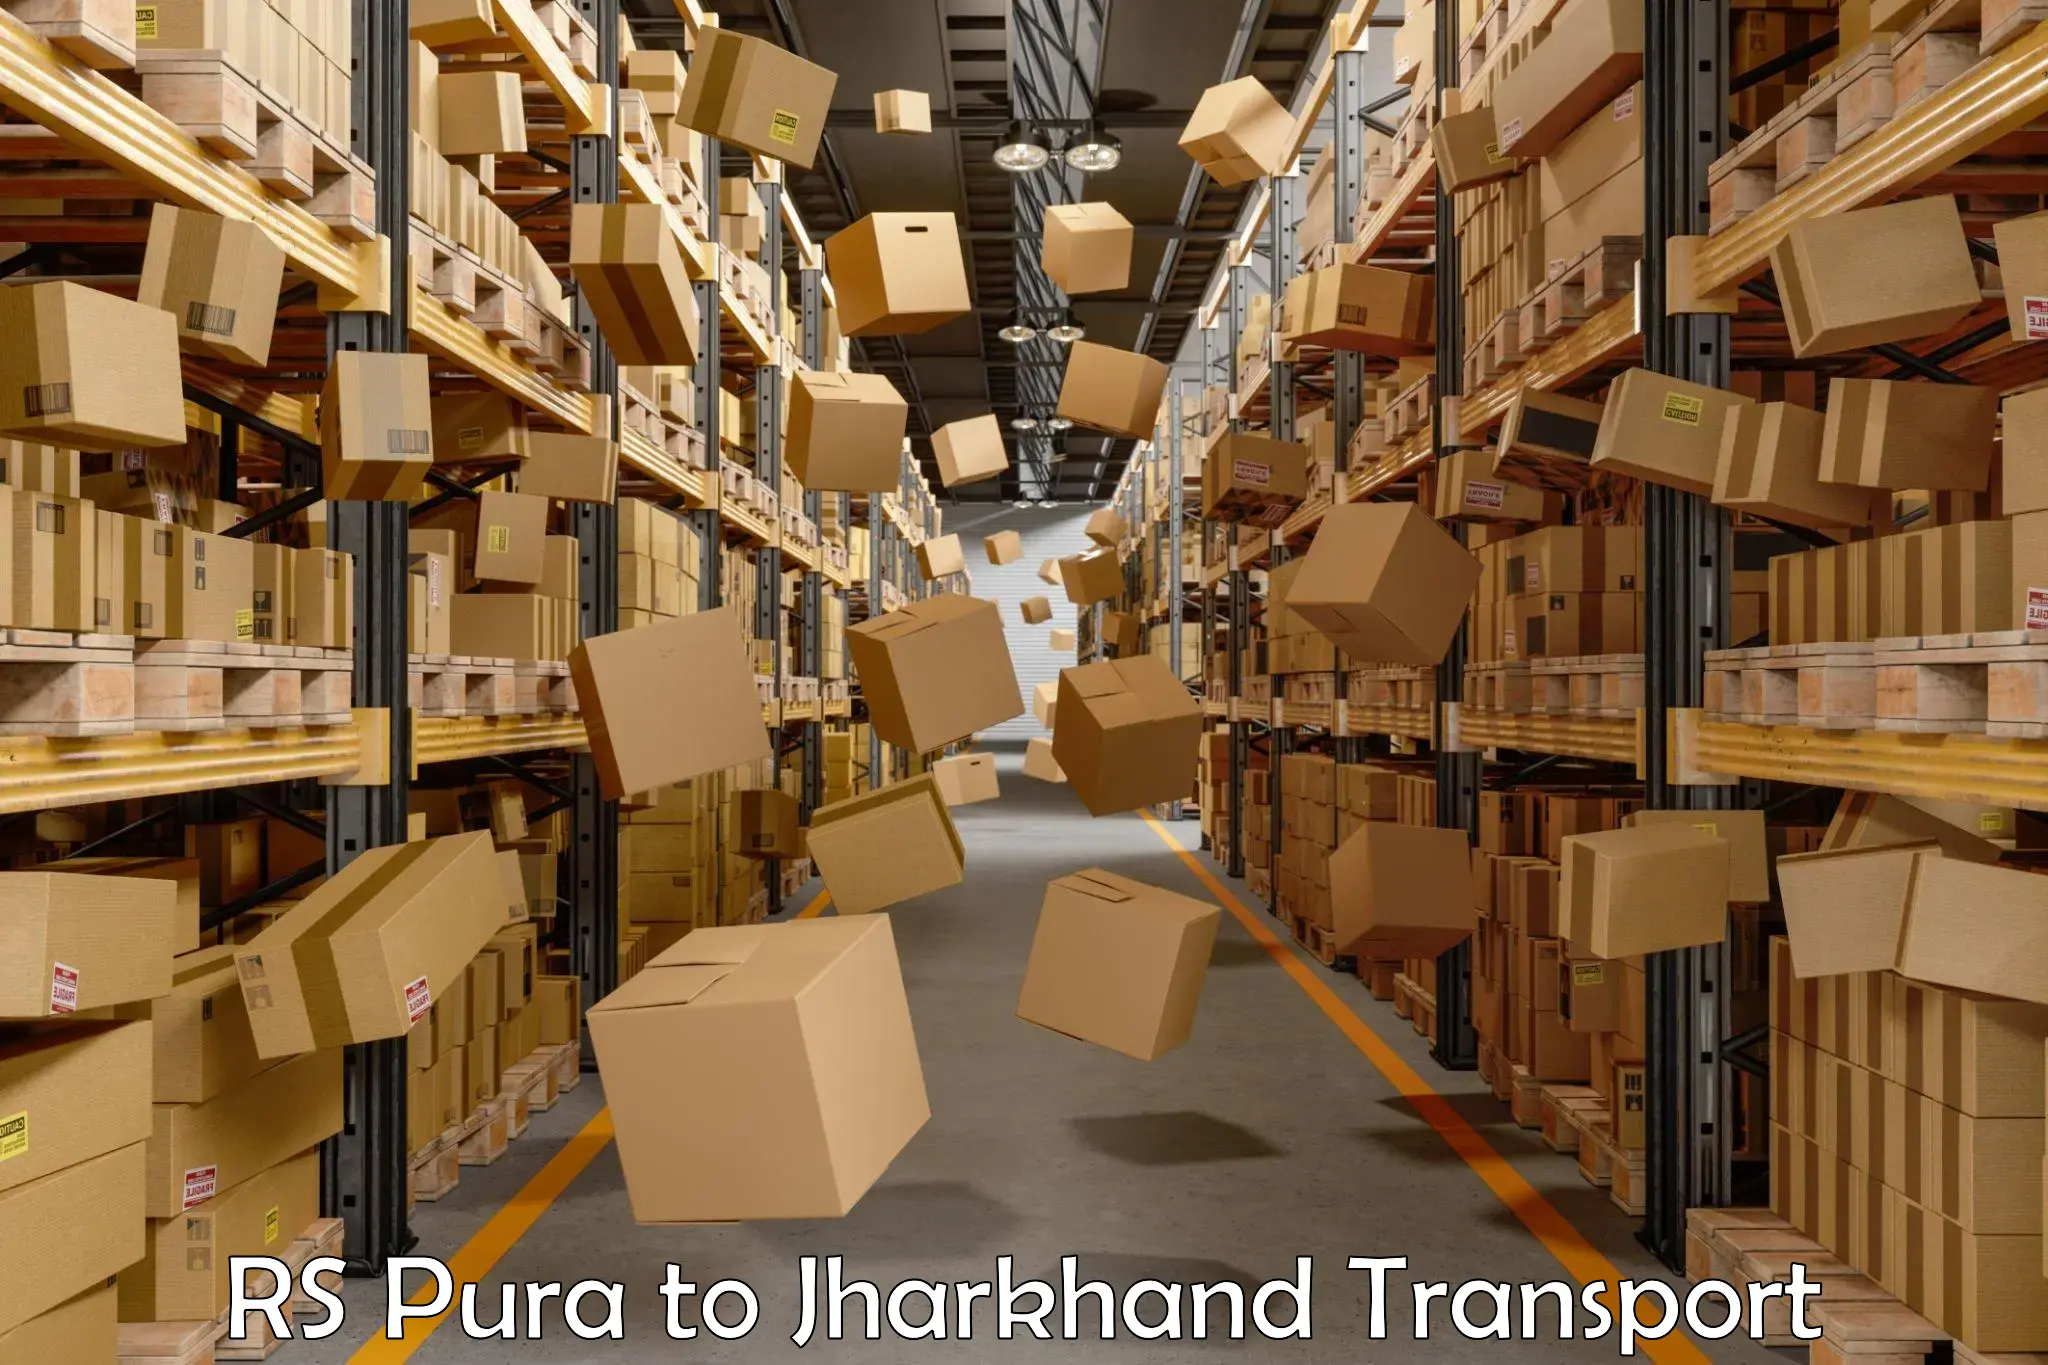 Pick up transport service RS Pura to Medininagar